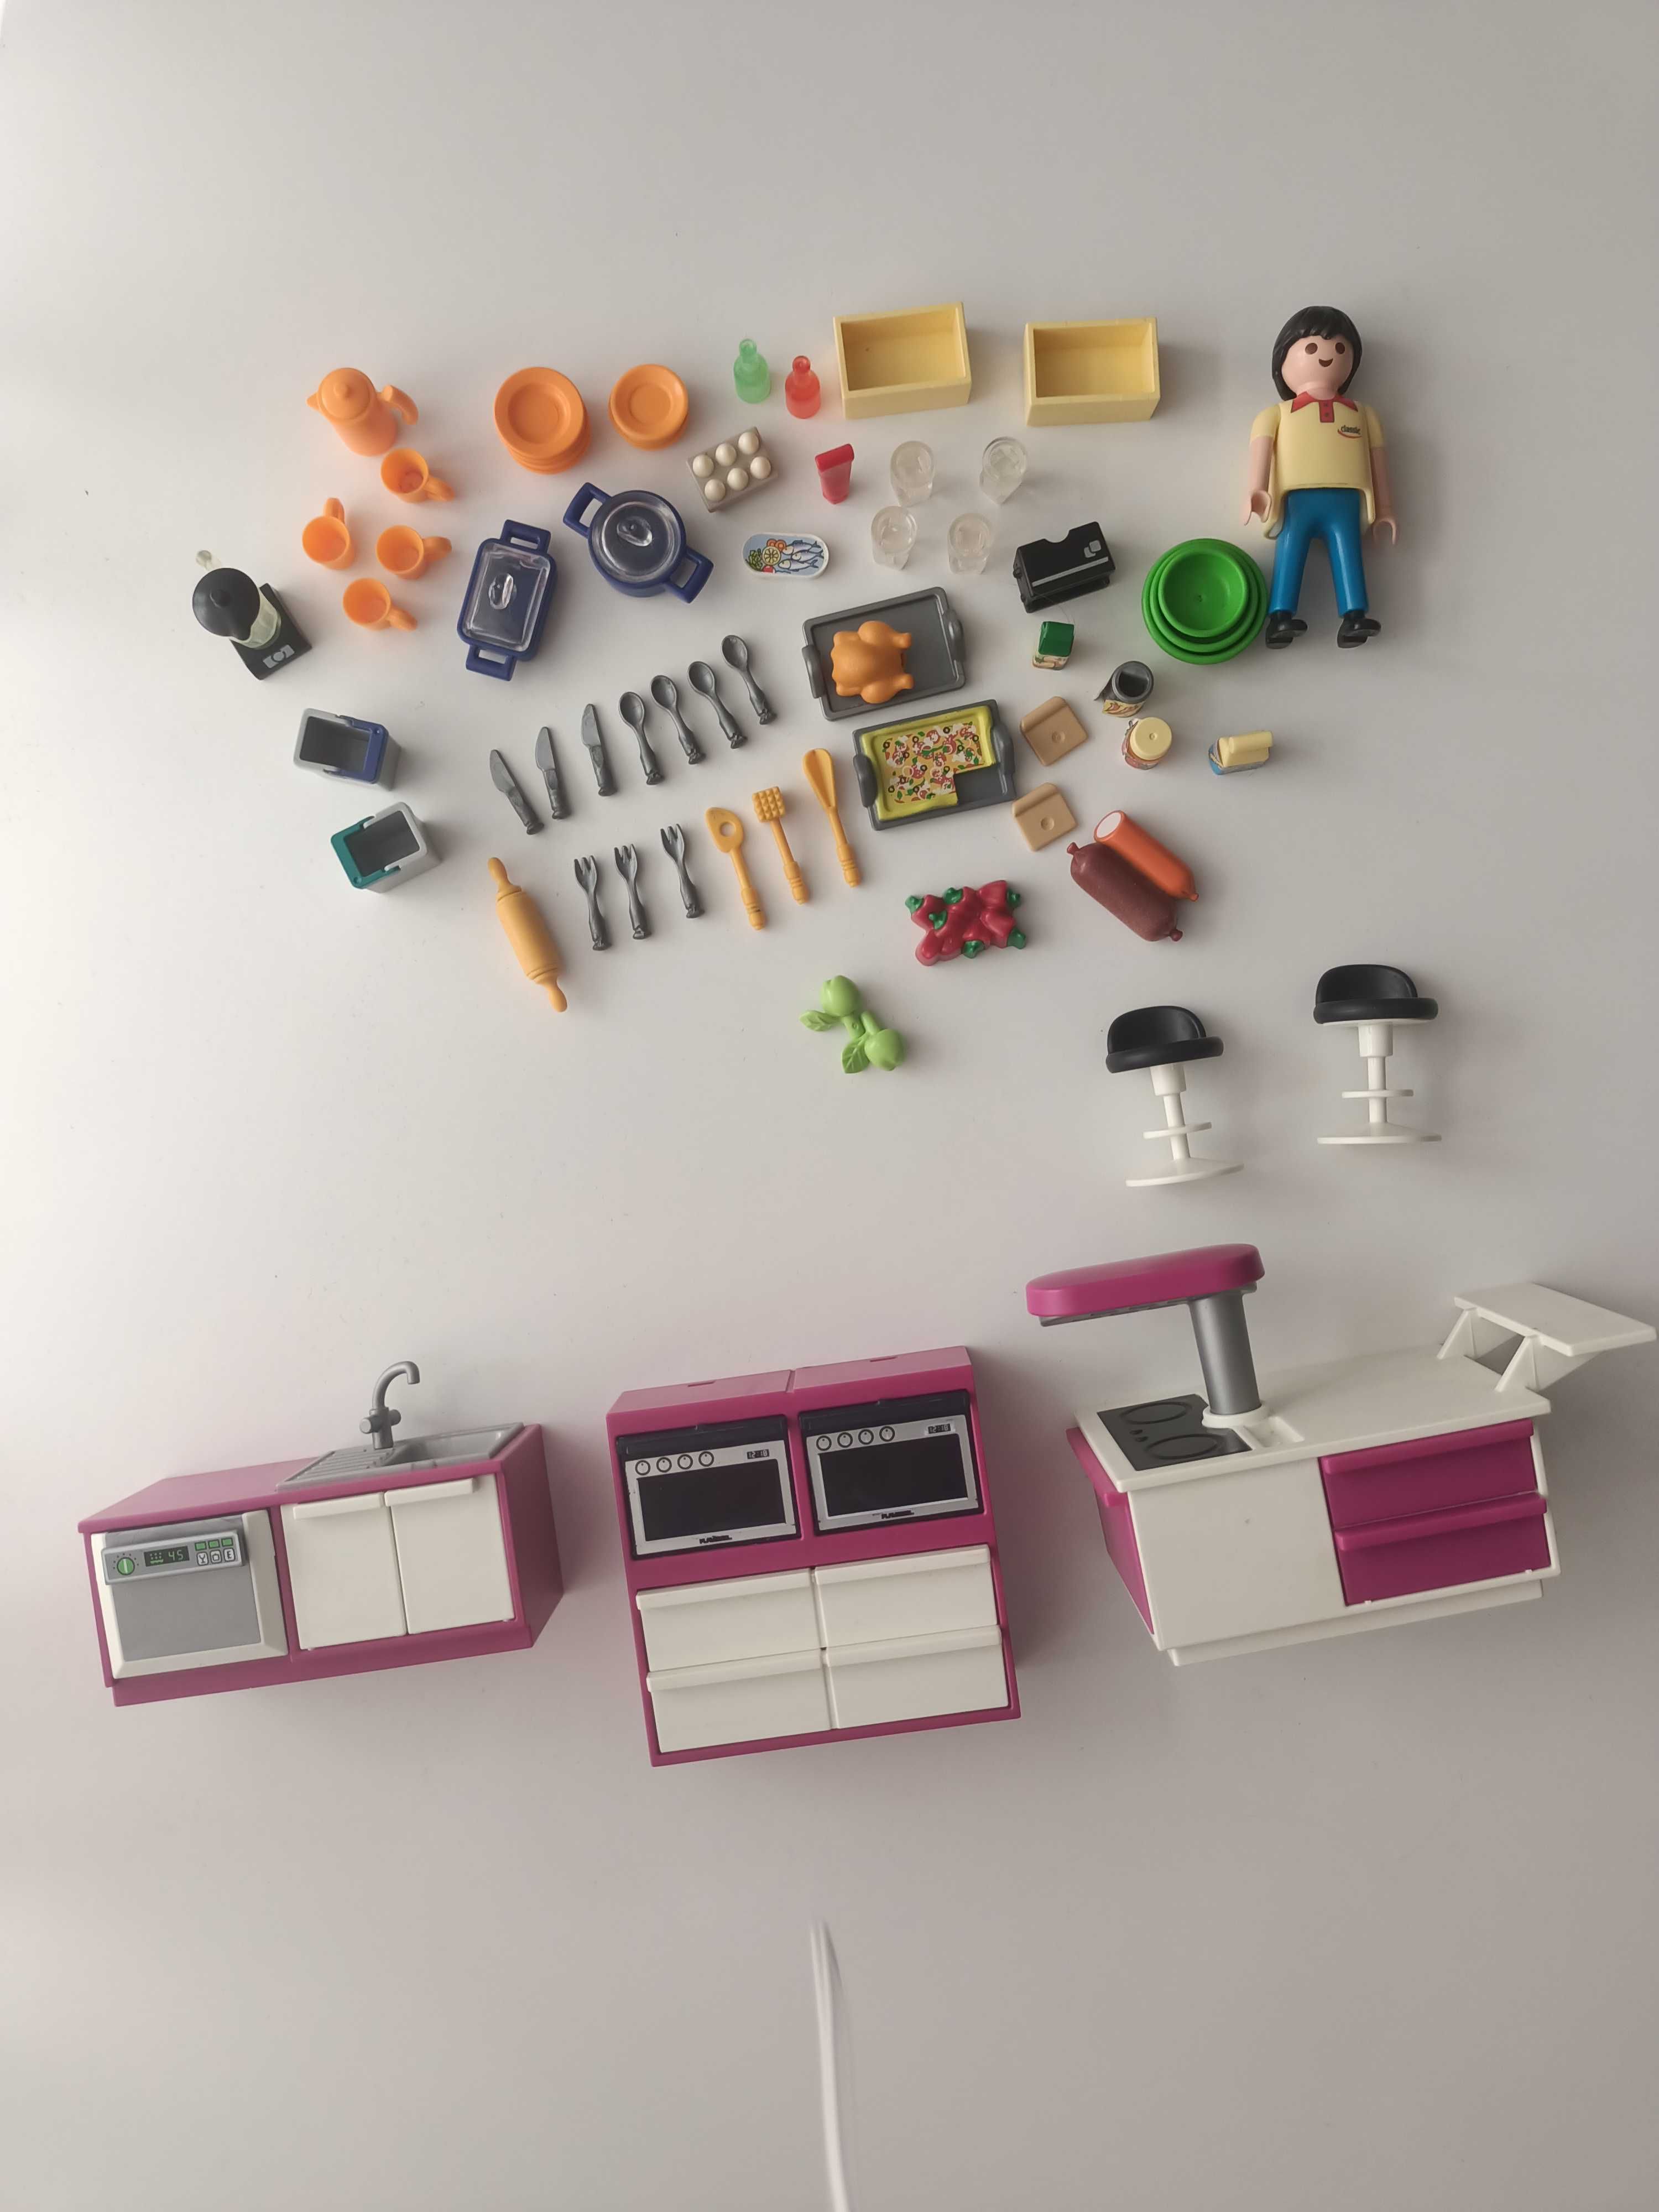 Kuchnia Playmobil zestaw różowa